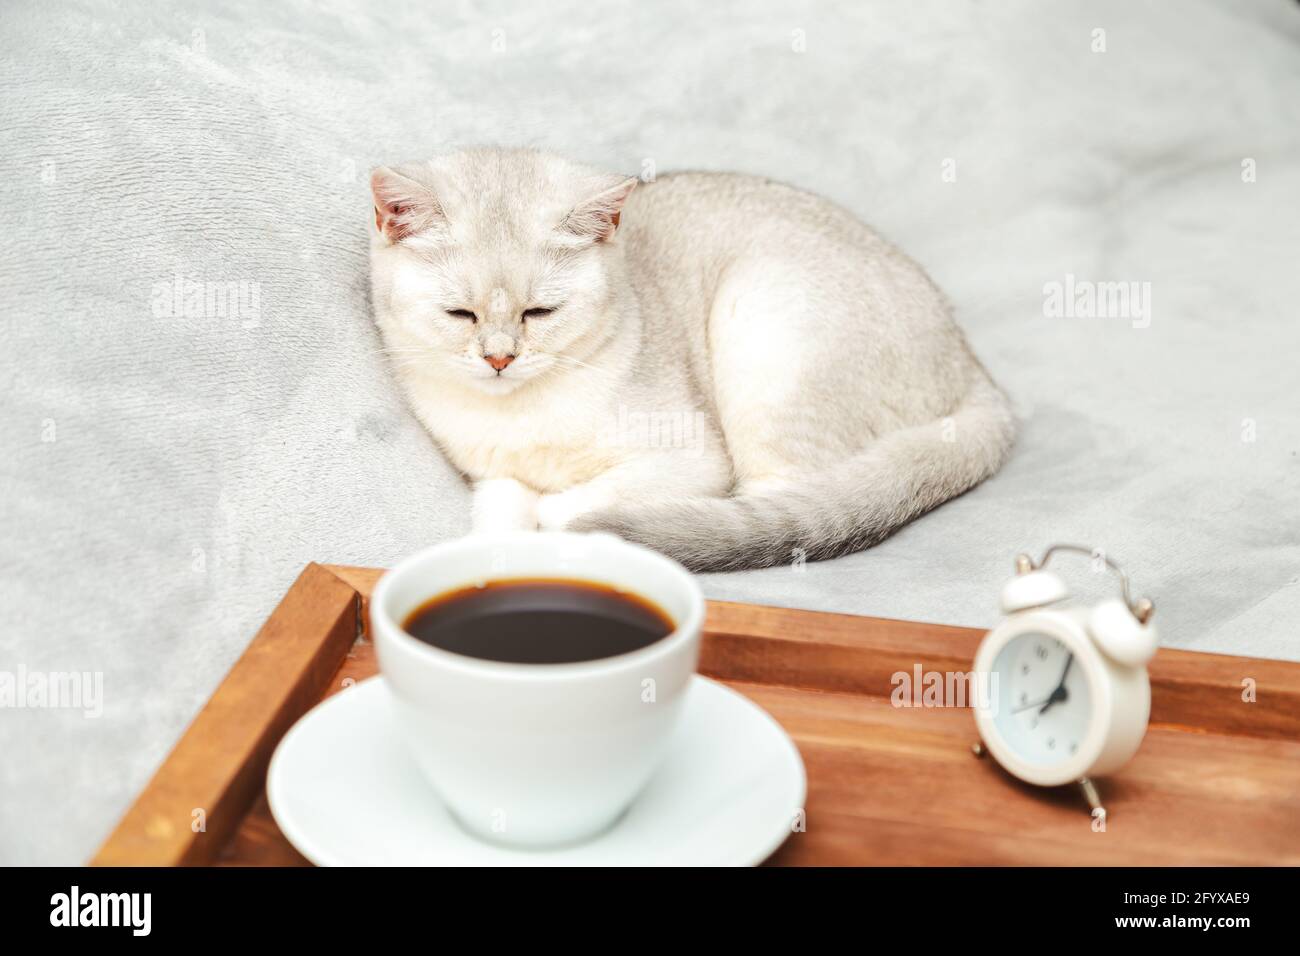 Faule weiße britische Katze schläft auf dem Bett. Neben dem Tablett mit einer Tasse Kaffee und Wecker. Am frühen Morgen. Selektiver Fokus. Stockfoto